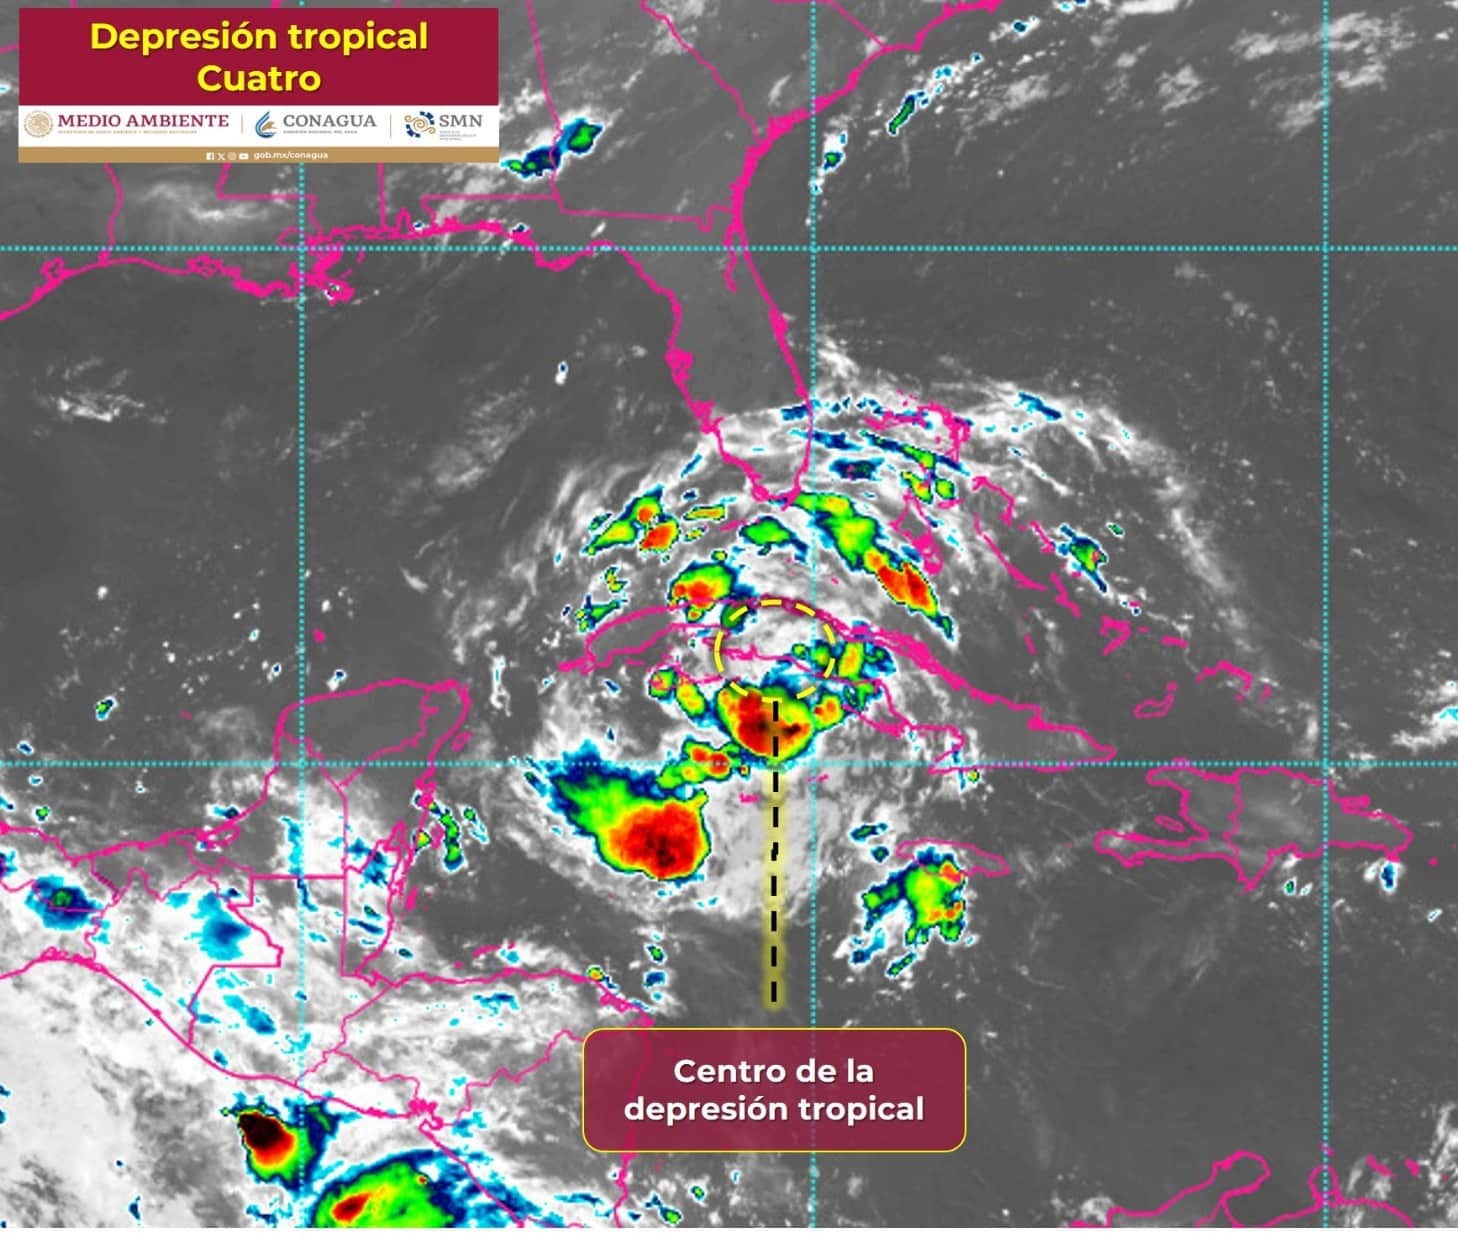 La depresión tropical Cuatro que se localiza al sur de Cuba.